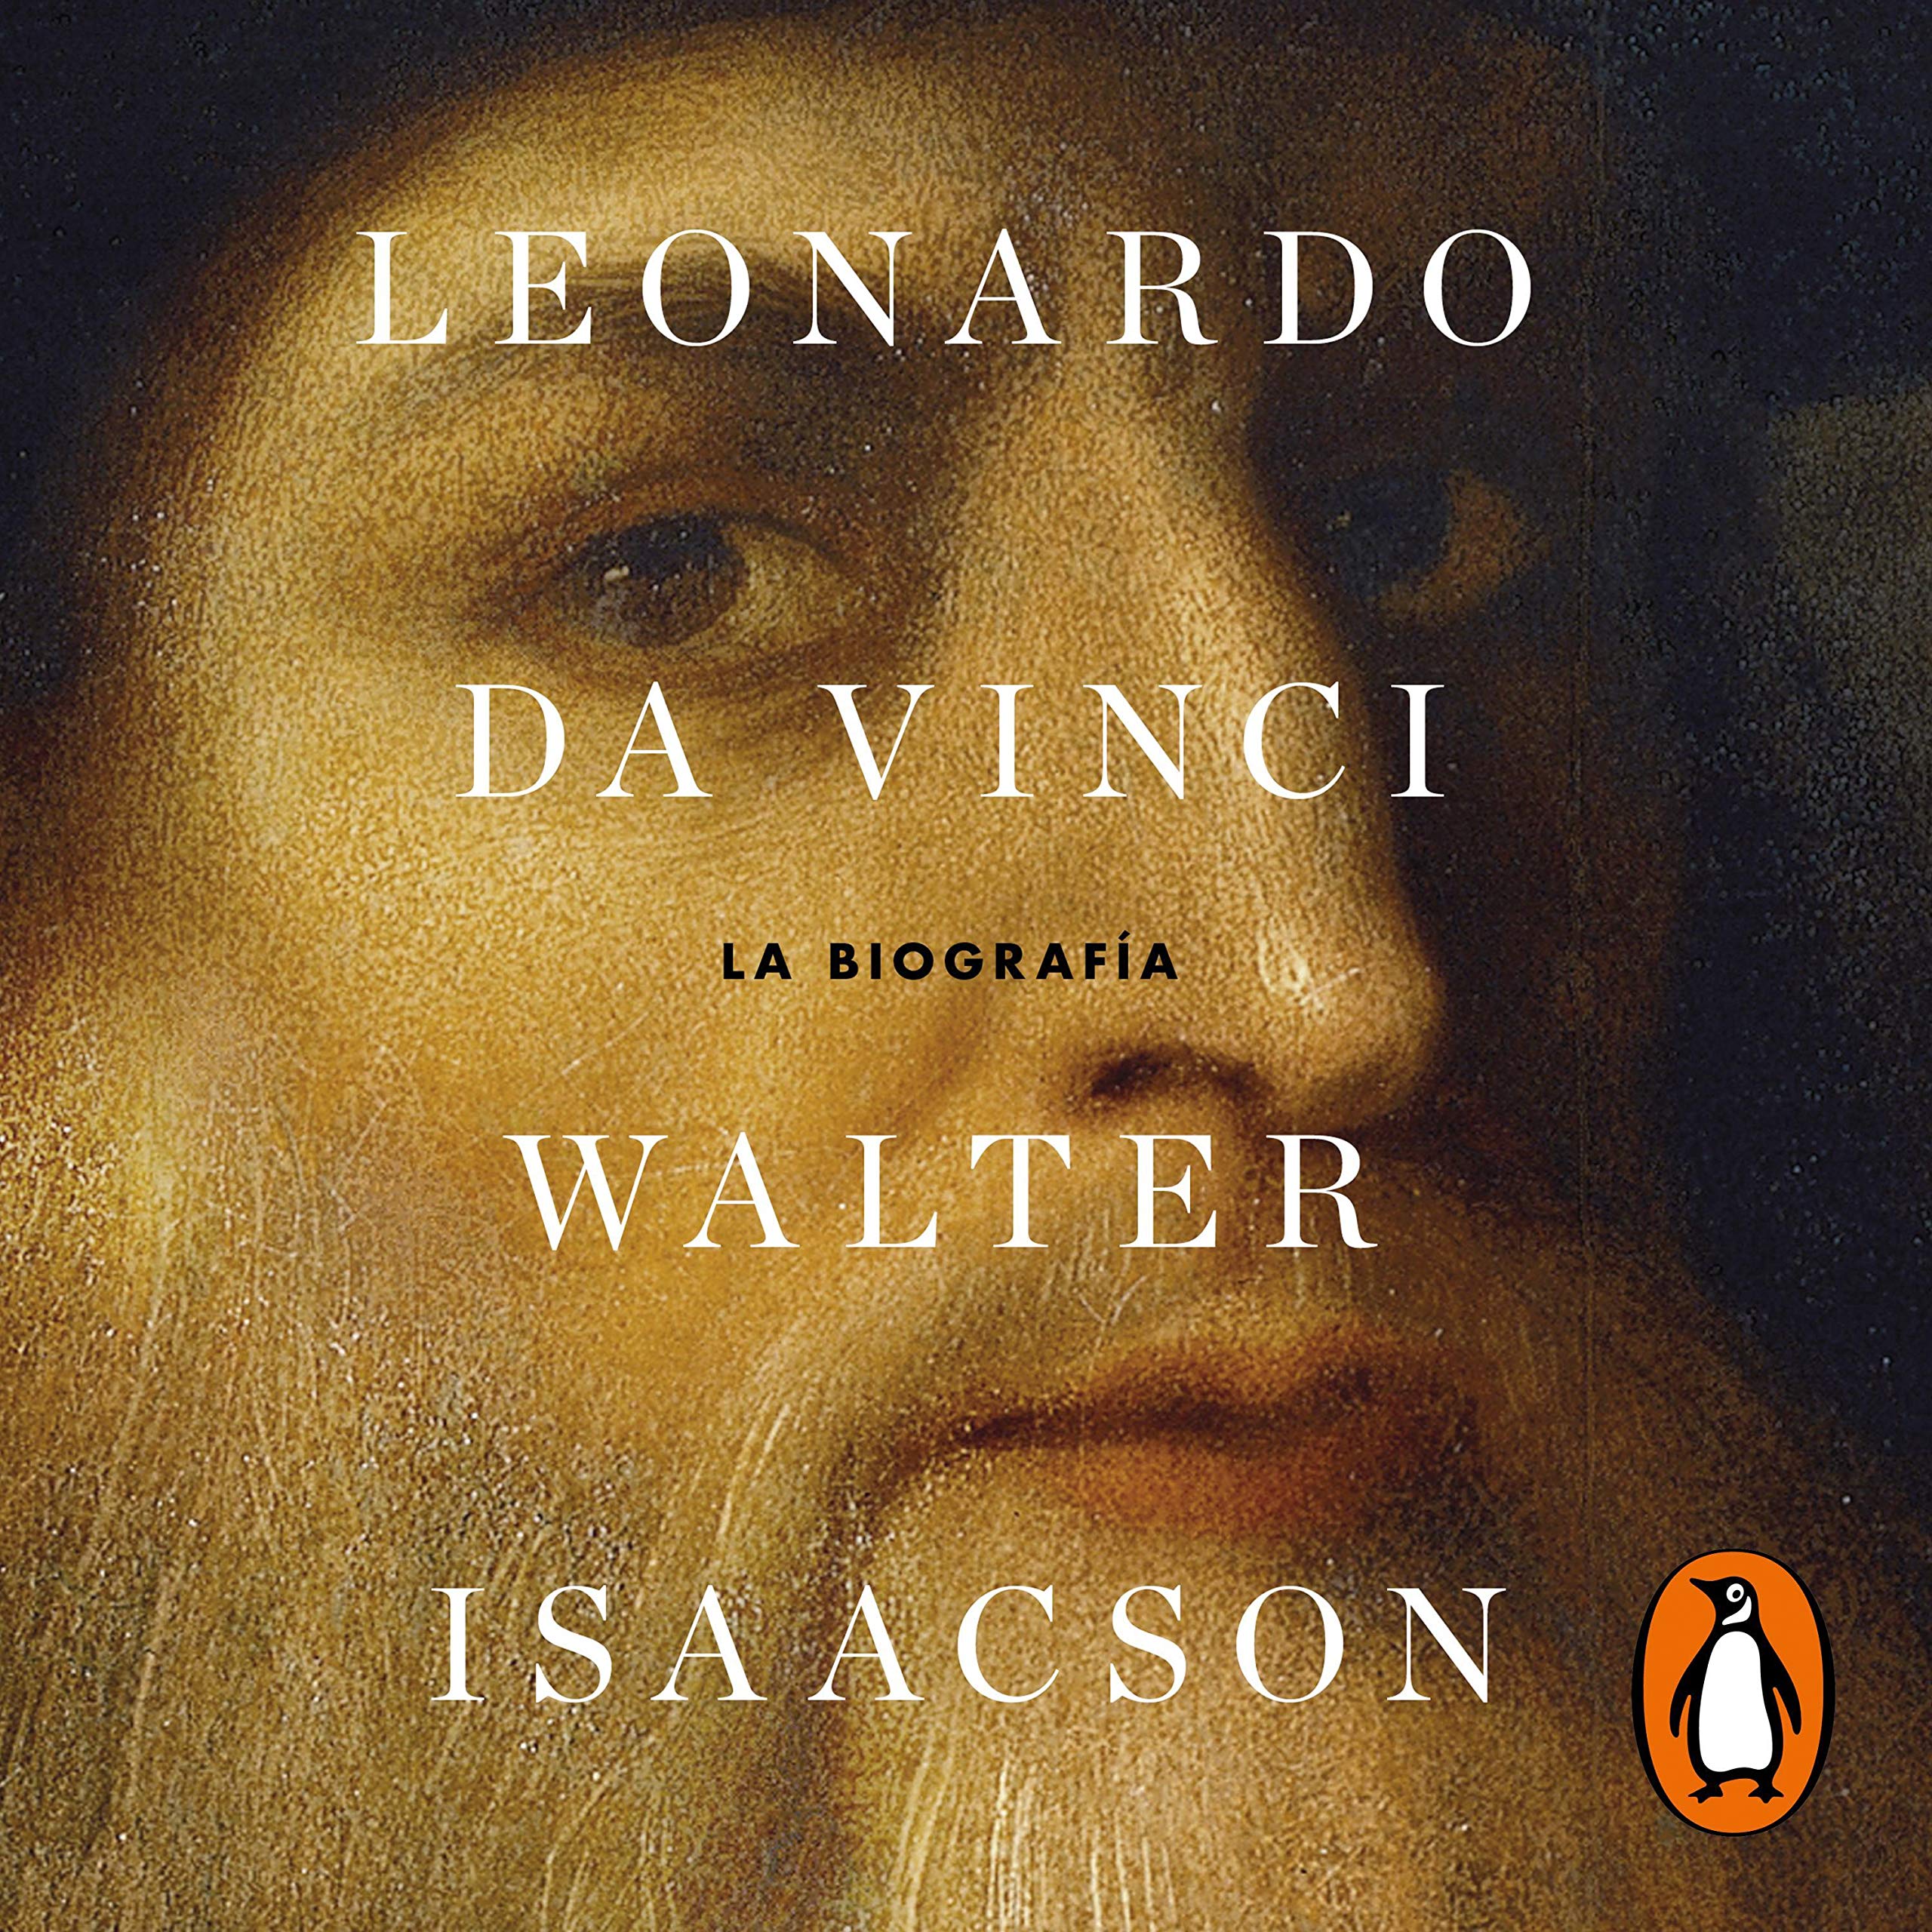 Leonardo da Vinci [Spanish Edition]: La biografía